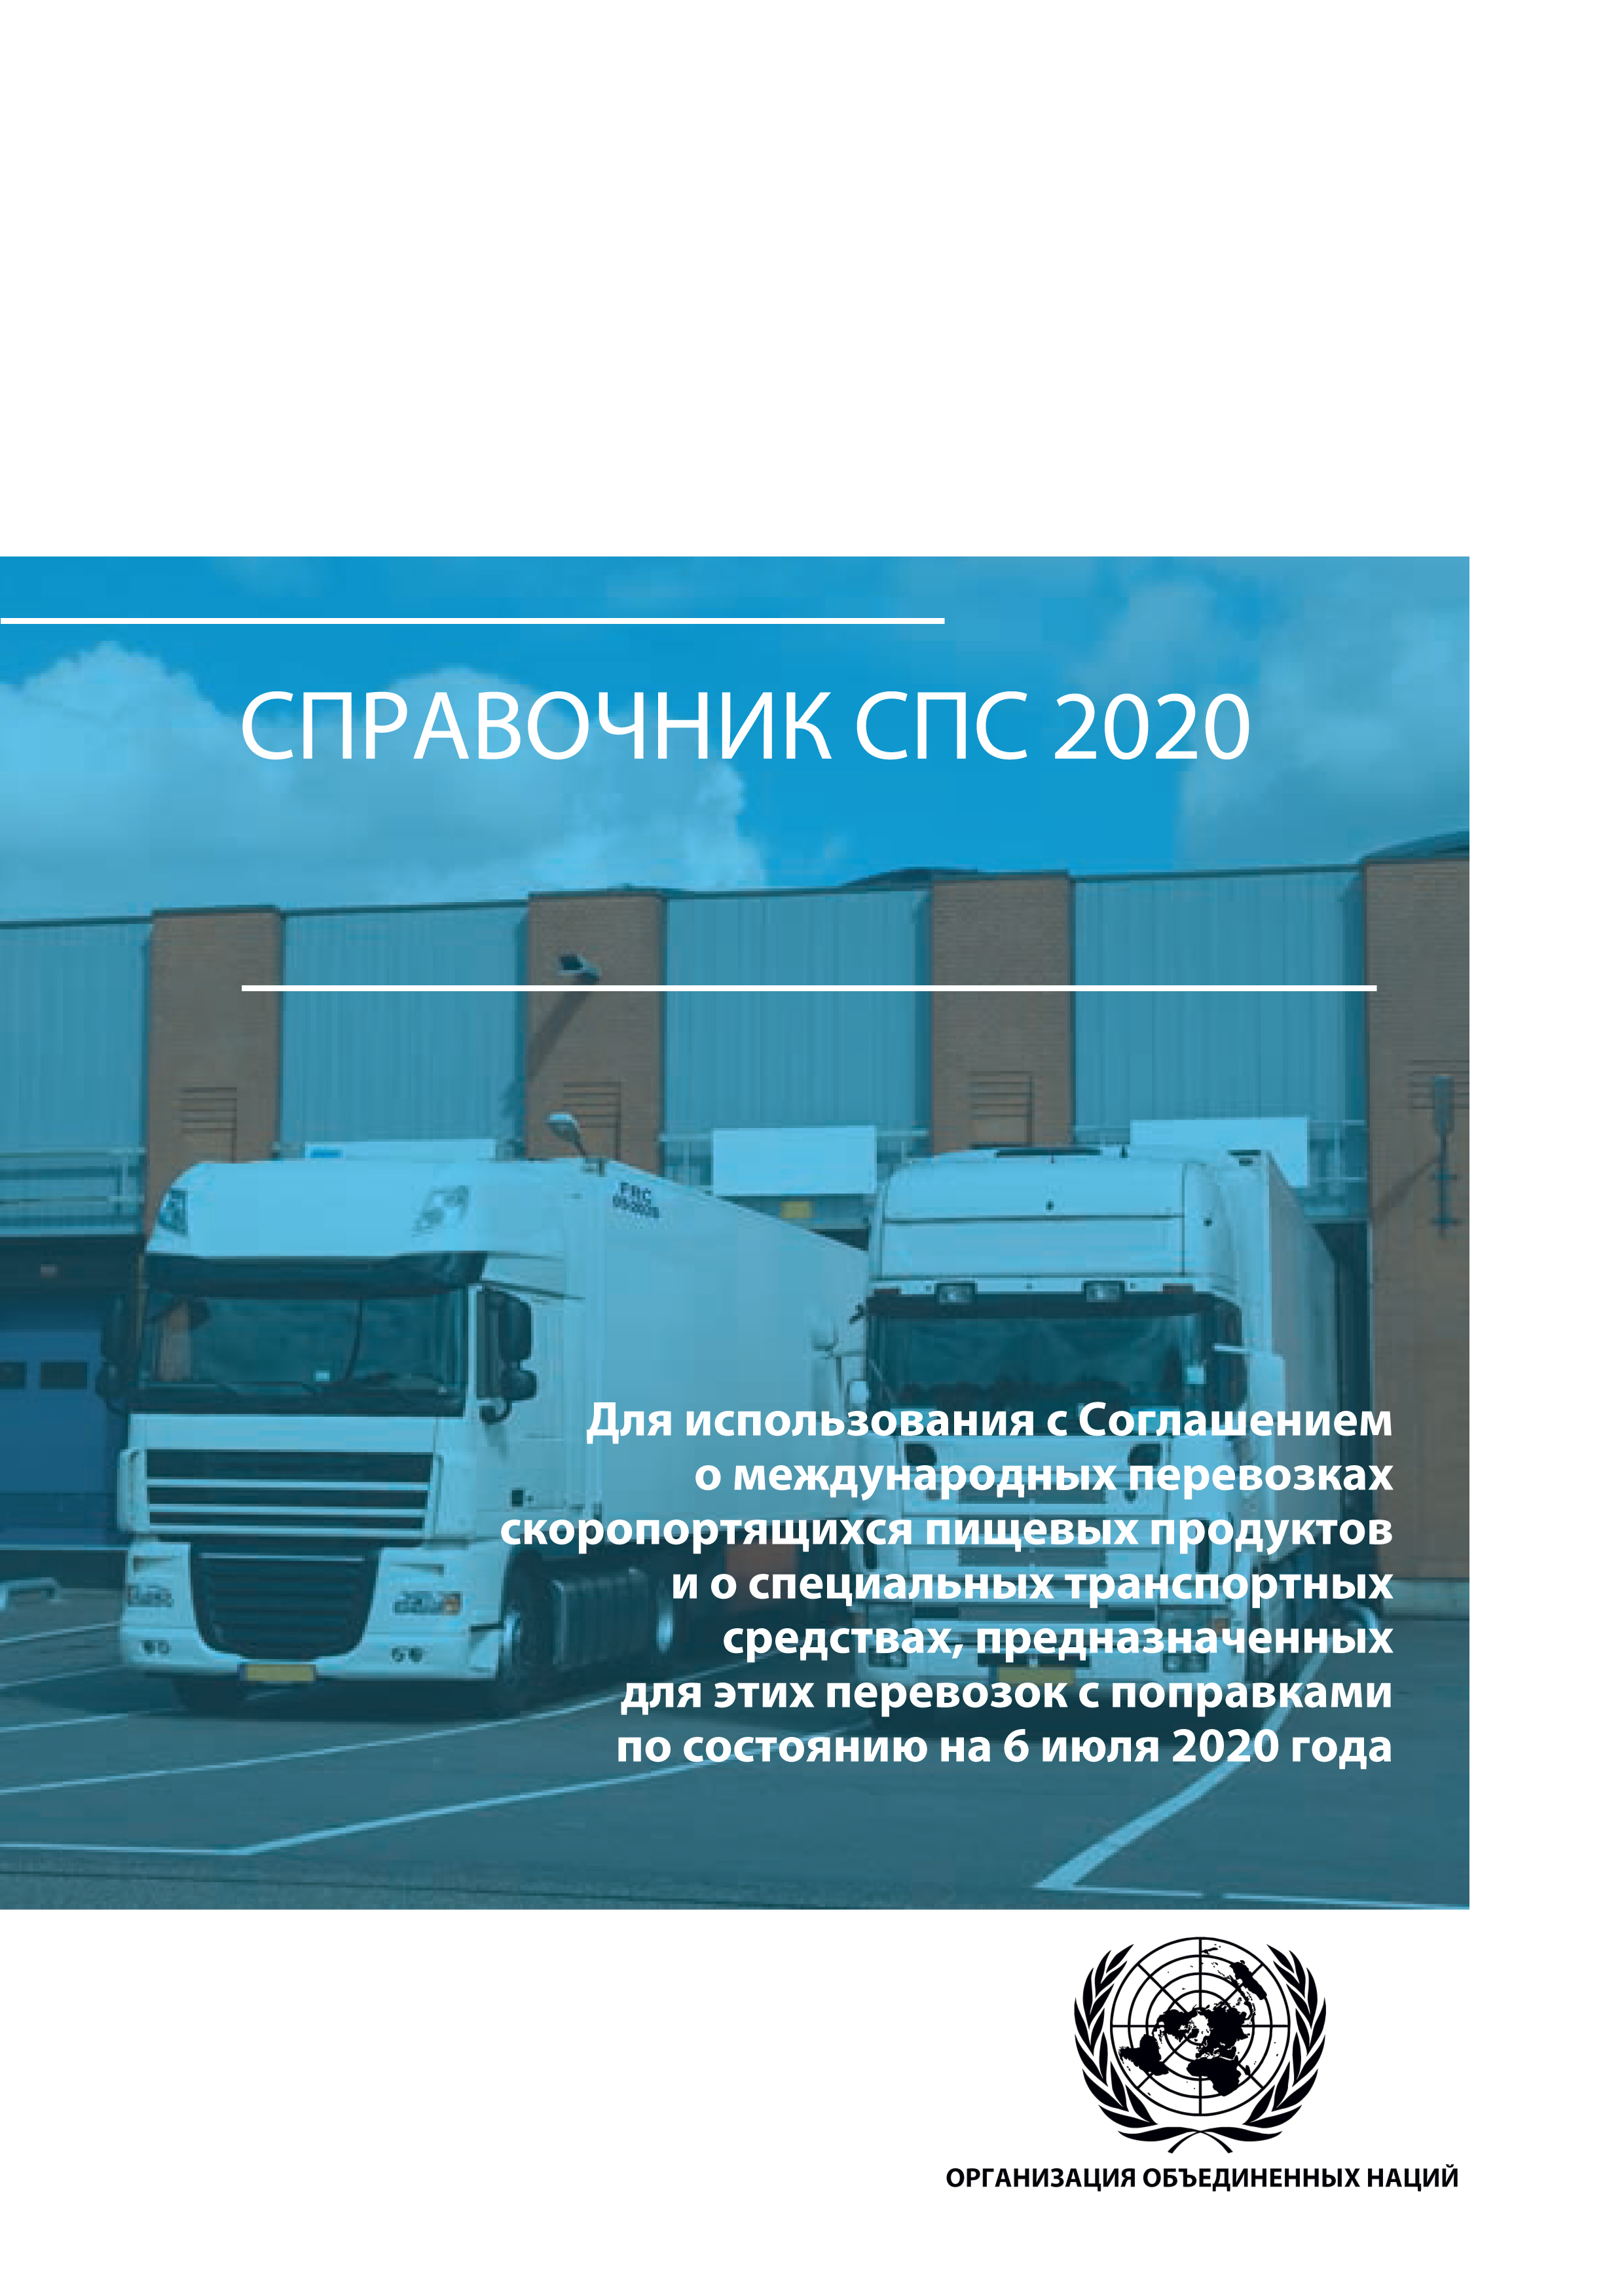 image of Справочник СПС 2020